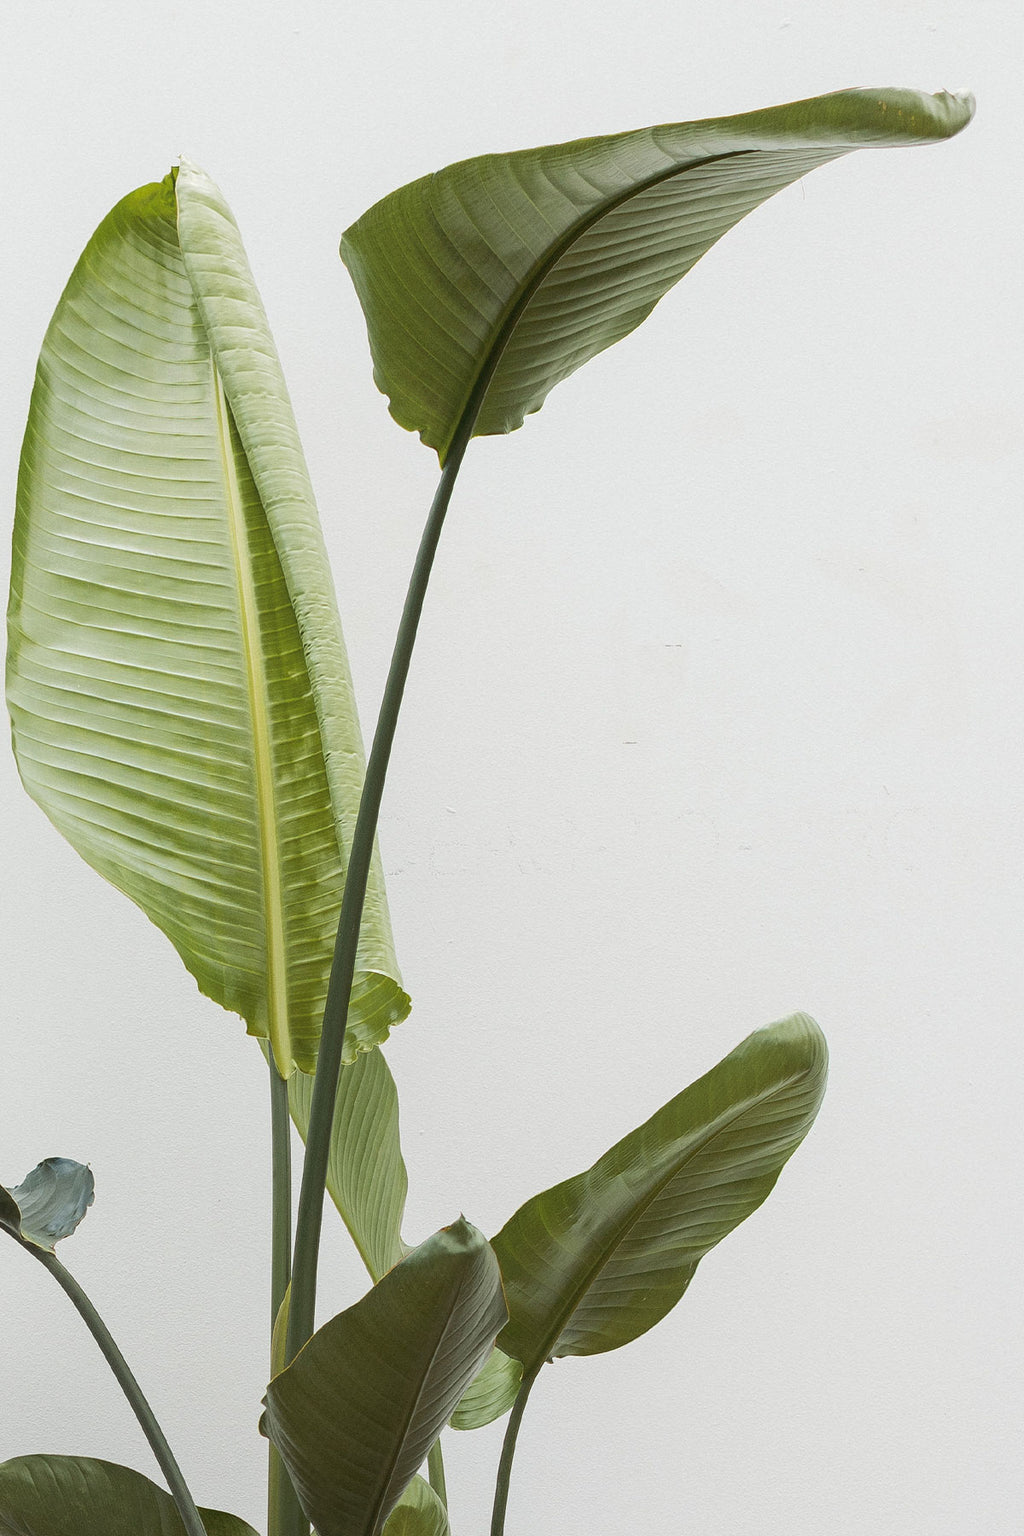 Comprar Ave del Paraiso o Strelitzia Augusta online | April Plants |  APRILPLANTS